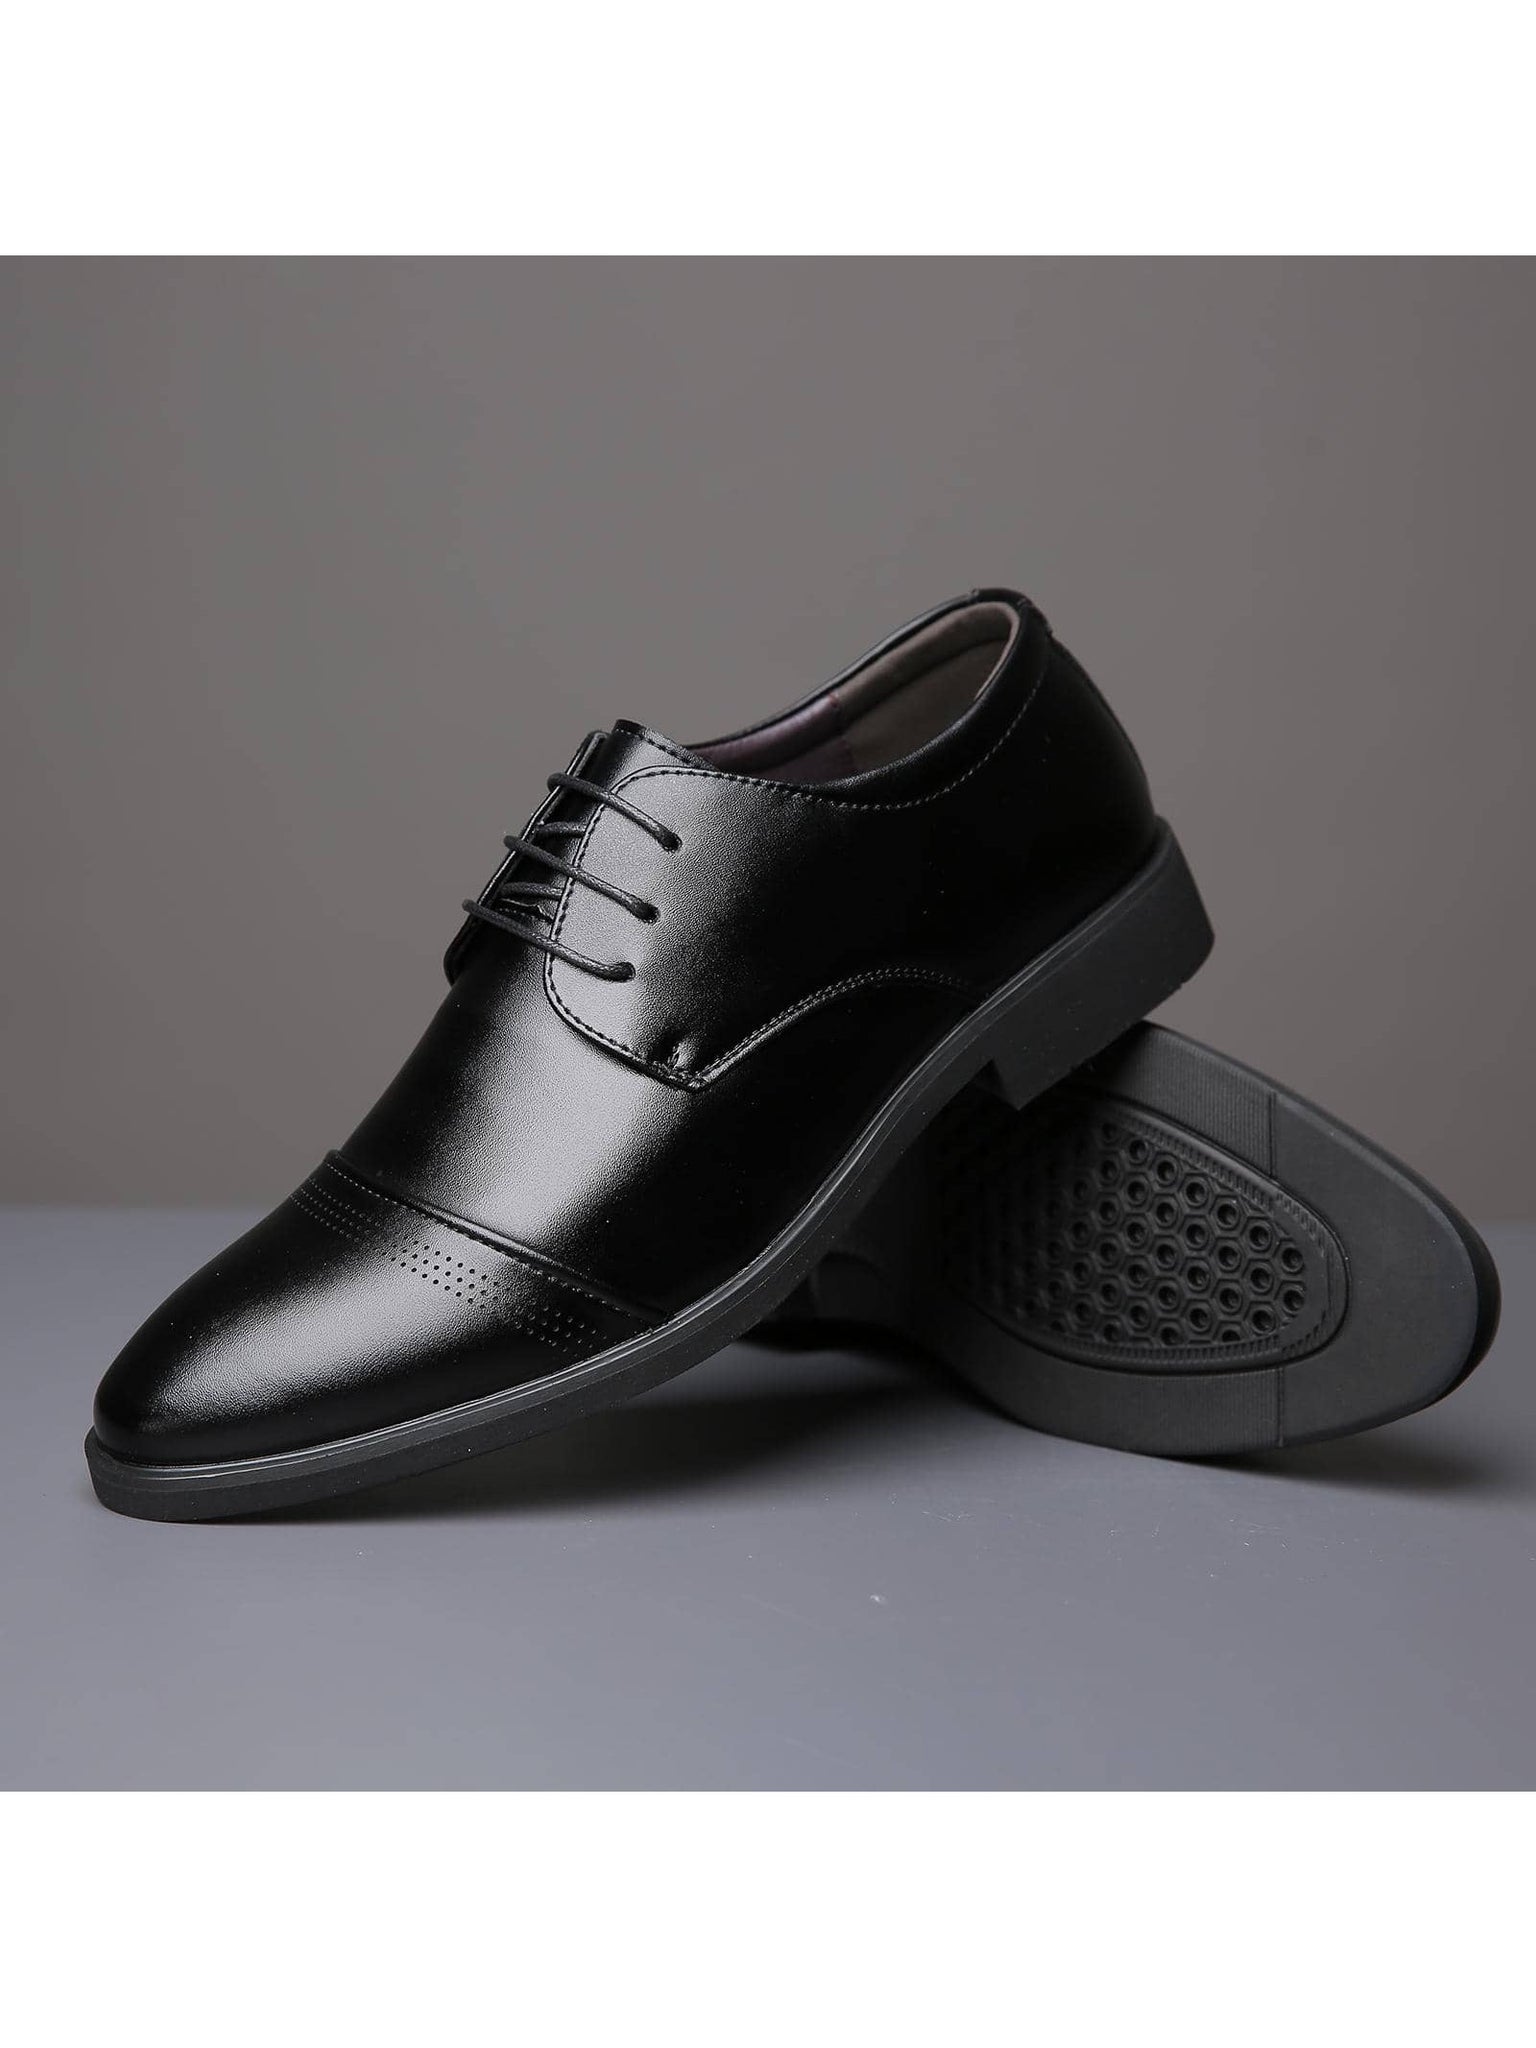 Men Minimalist Lace-up Front Dress Shoes, Work Black Oxford Shoes